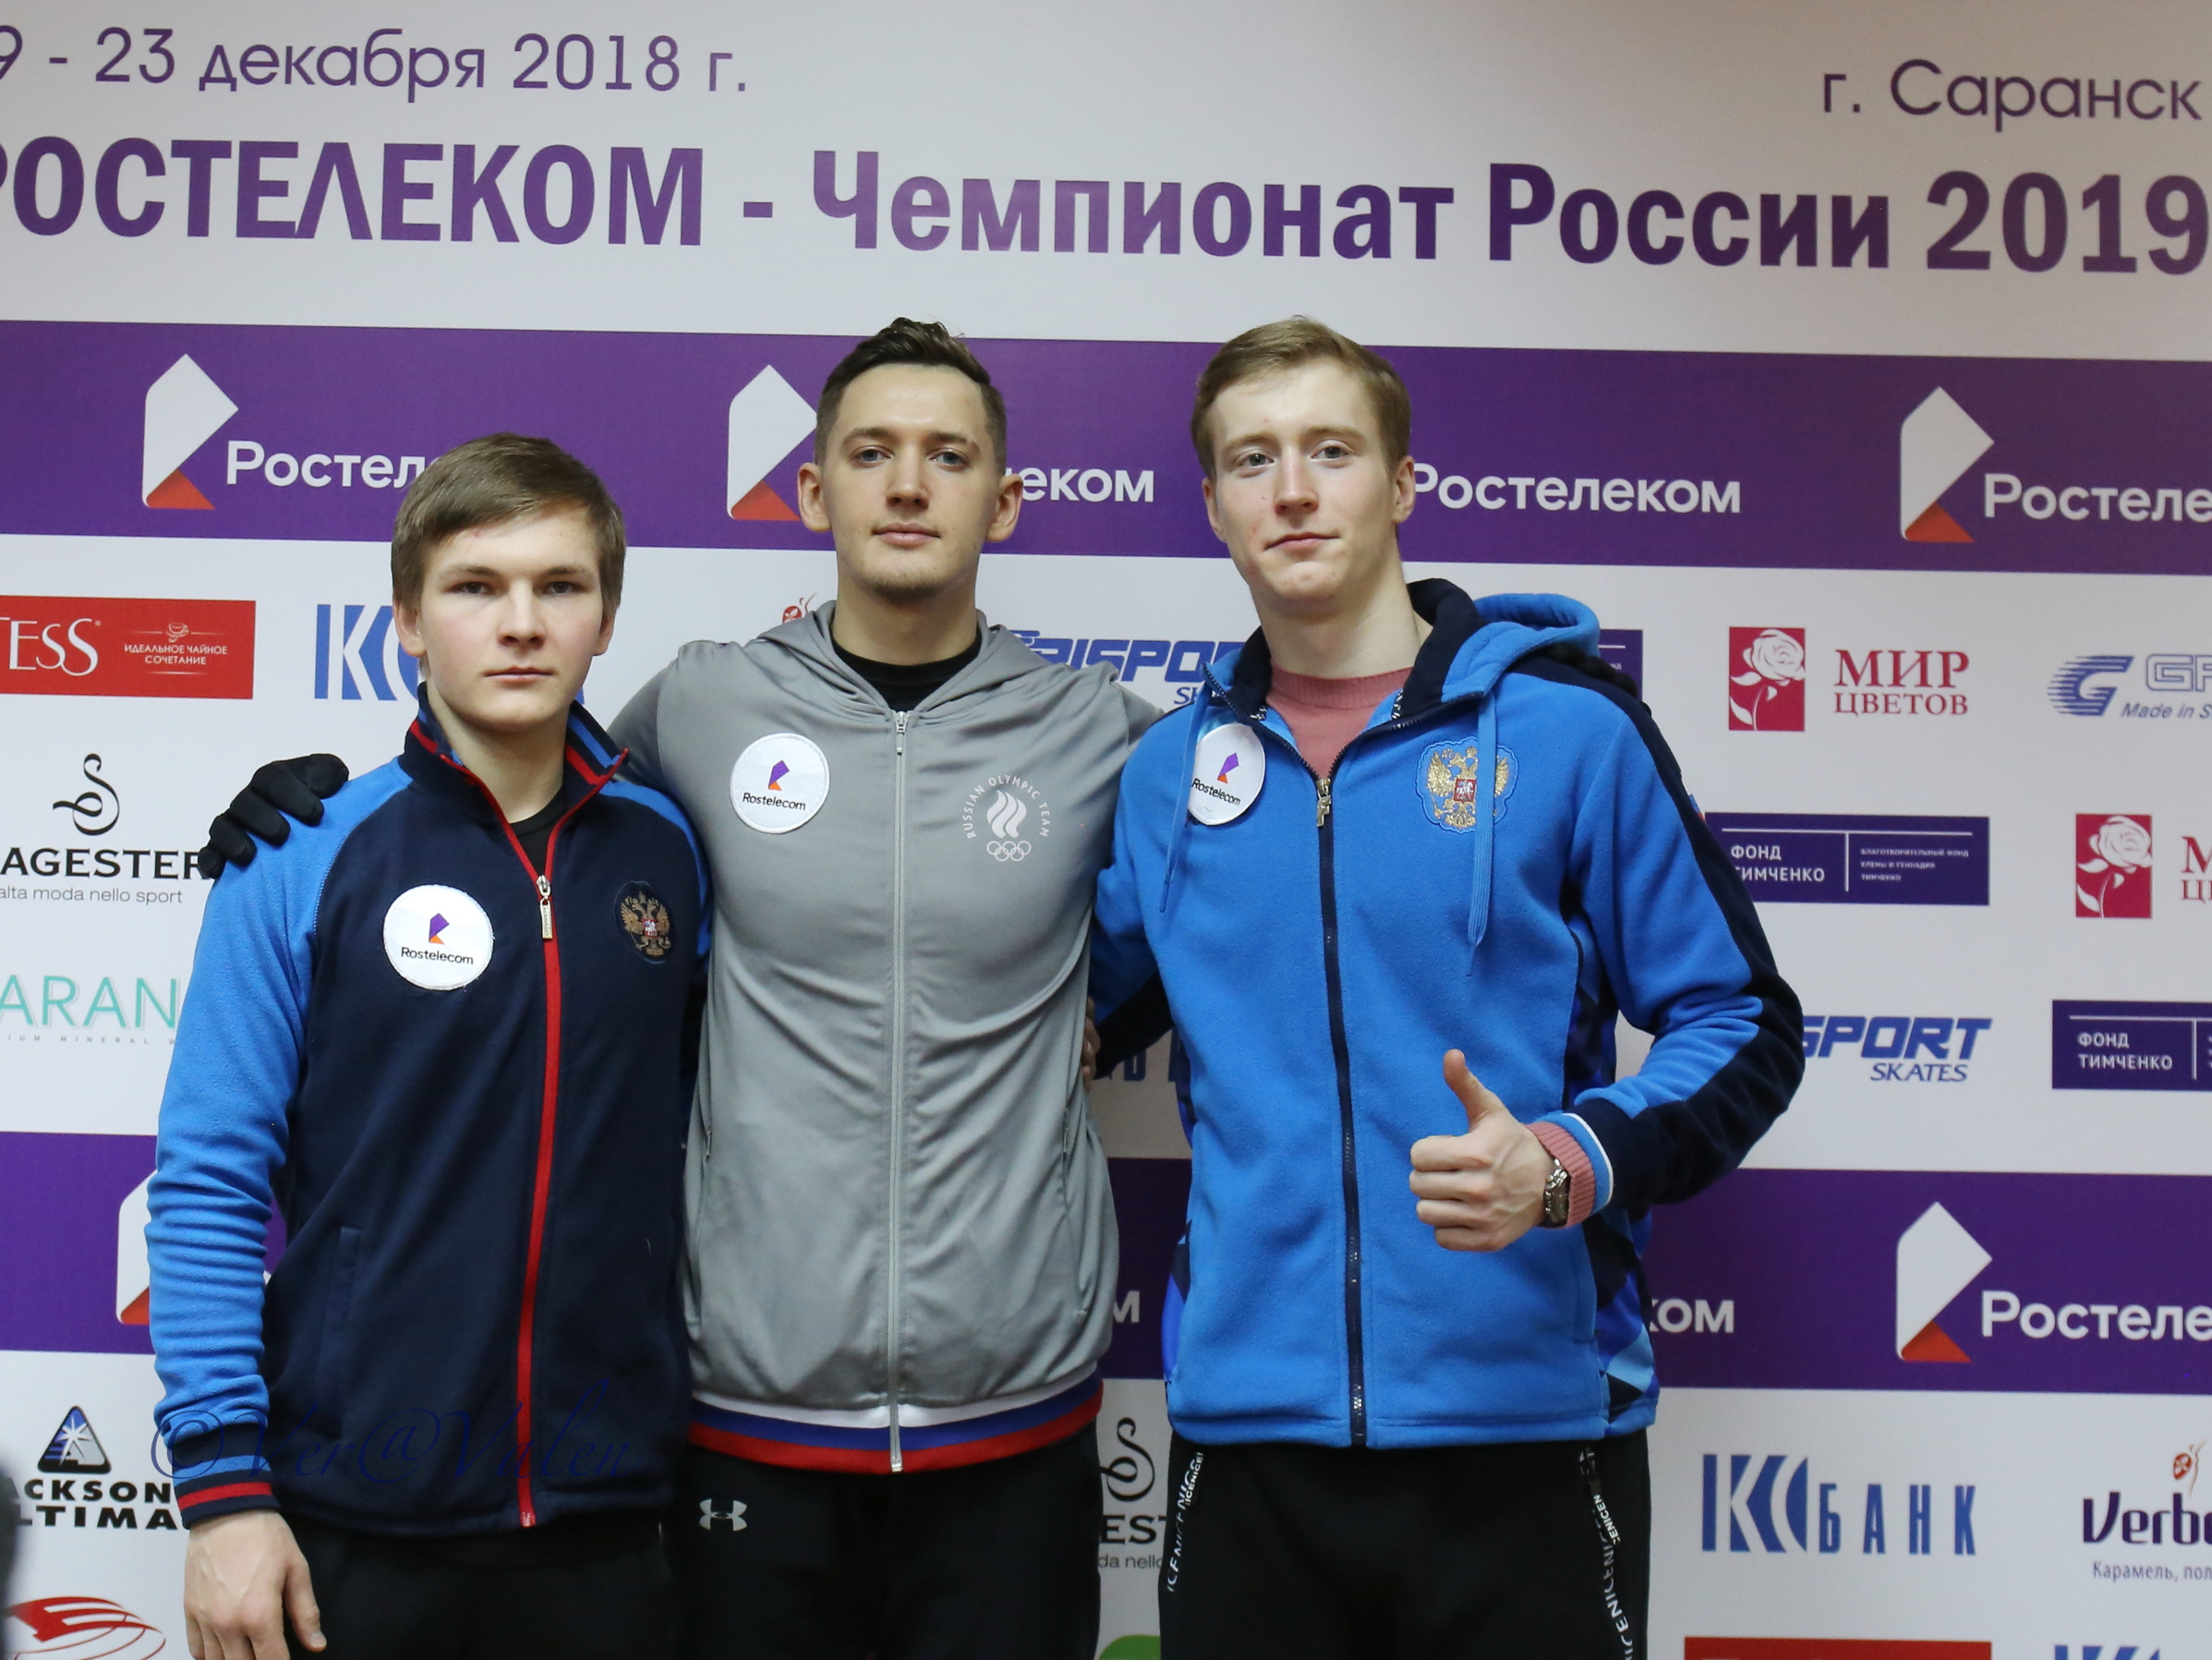 Fotoreportage: Russische Meisterschaften -Kür der Männer